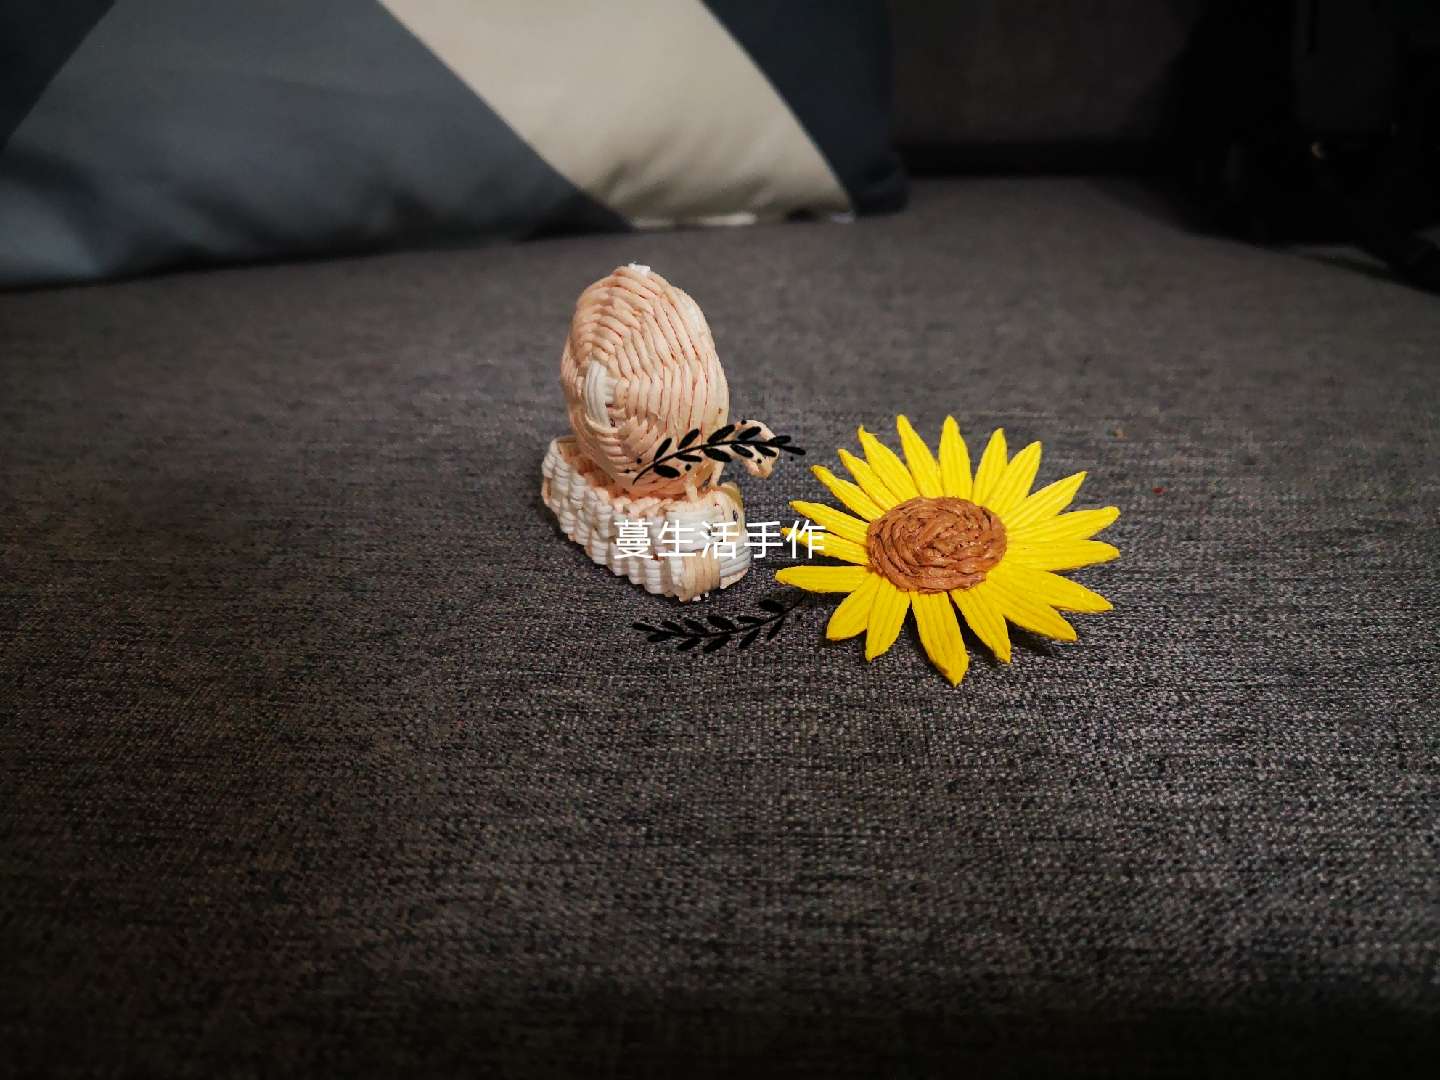 之前做过一个简版的藤编小蜗牛，今天改良了一下，当成小摆件，跟小雏菊一起看起来很有夏天的气息。